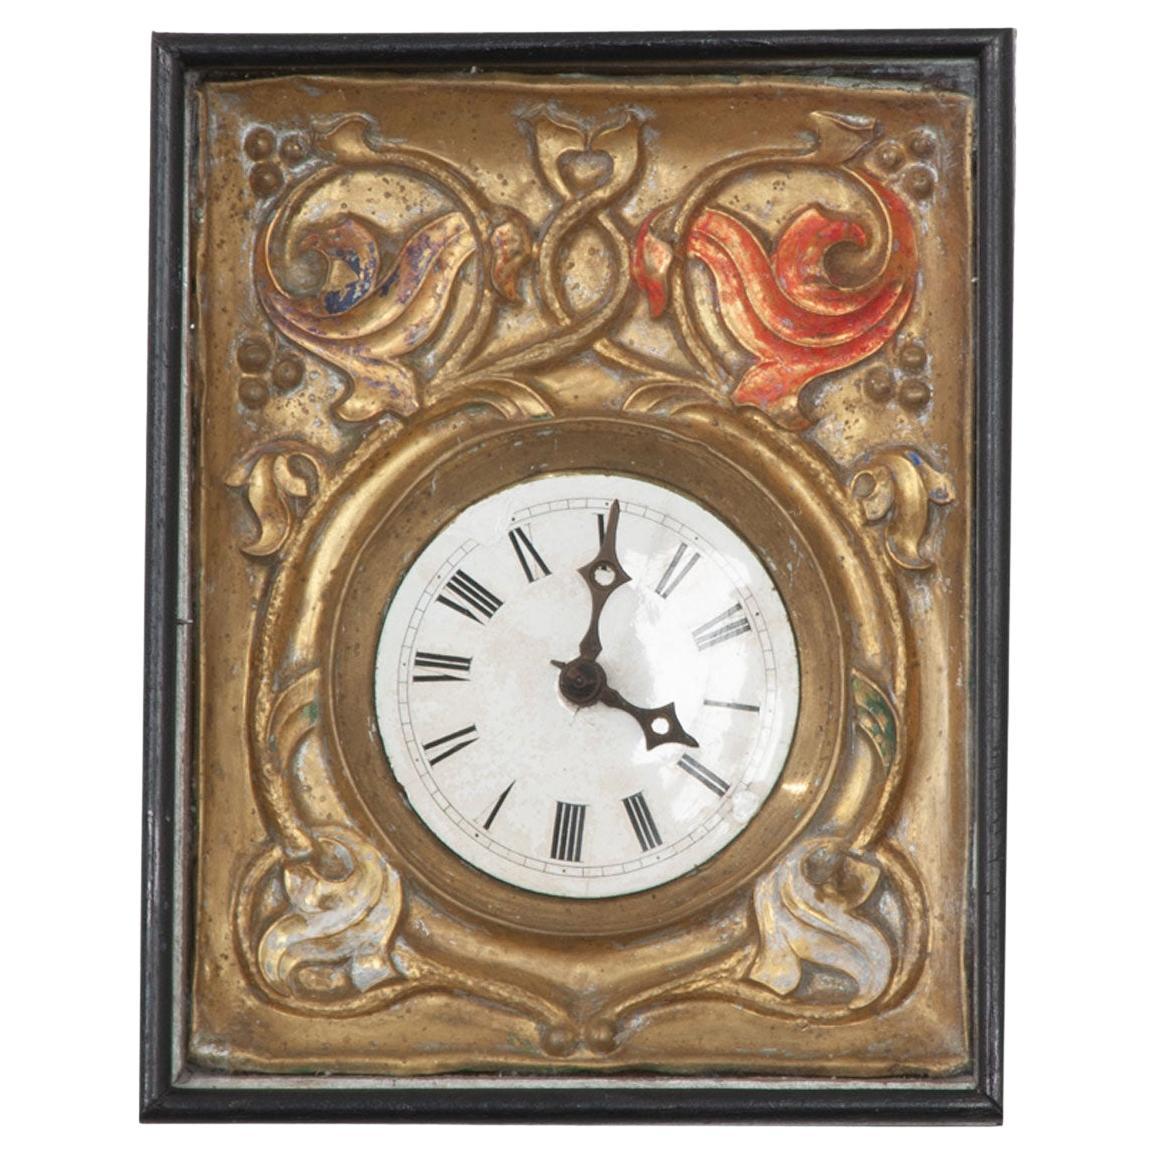 Horloge de la Forêt Noire allemande du 19e siècle encadrée